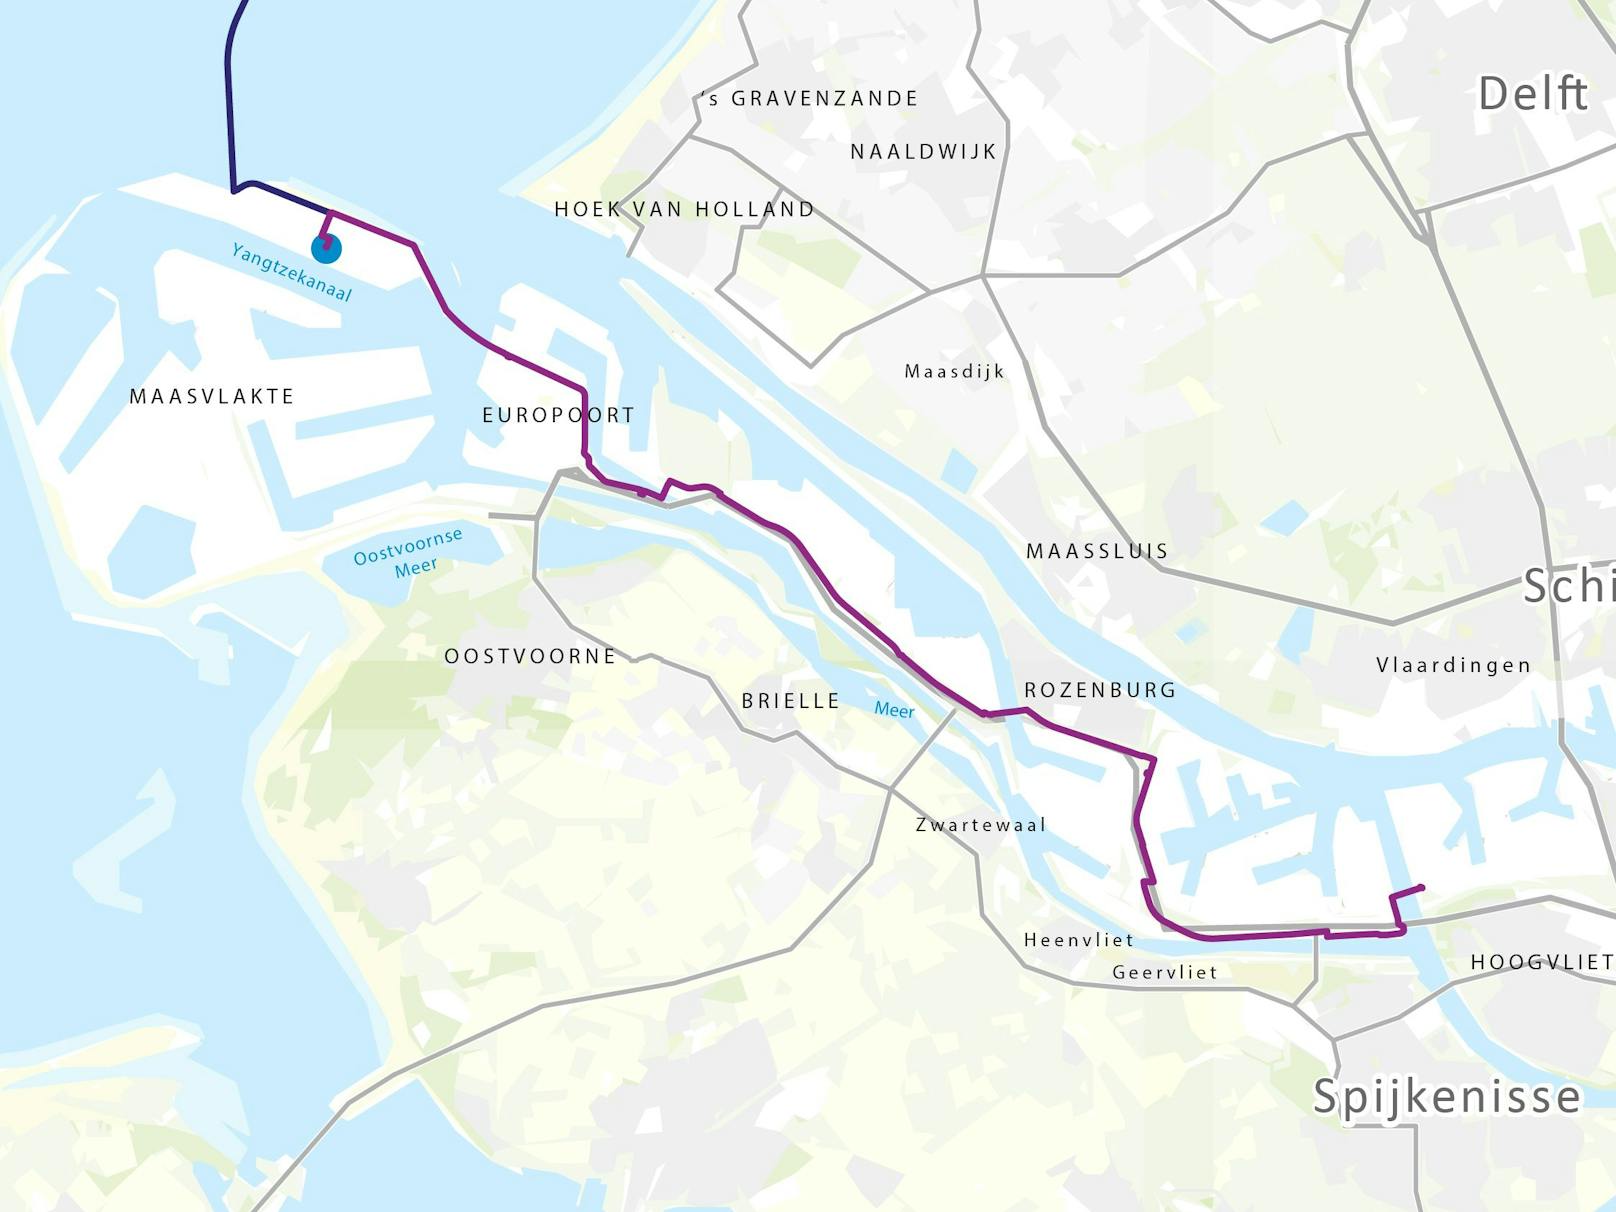 Betriebsbereit soll die Anlage 2026 sein, wie es heißt. Hinter dem Bau der Anlage stehen die Rotterdamer Hafenbehörde sowie das niederländische Gasunternehmen Gasunie.